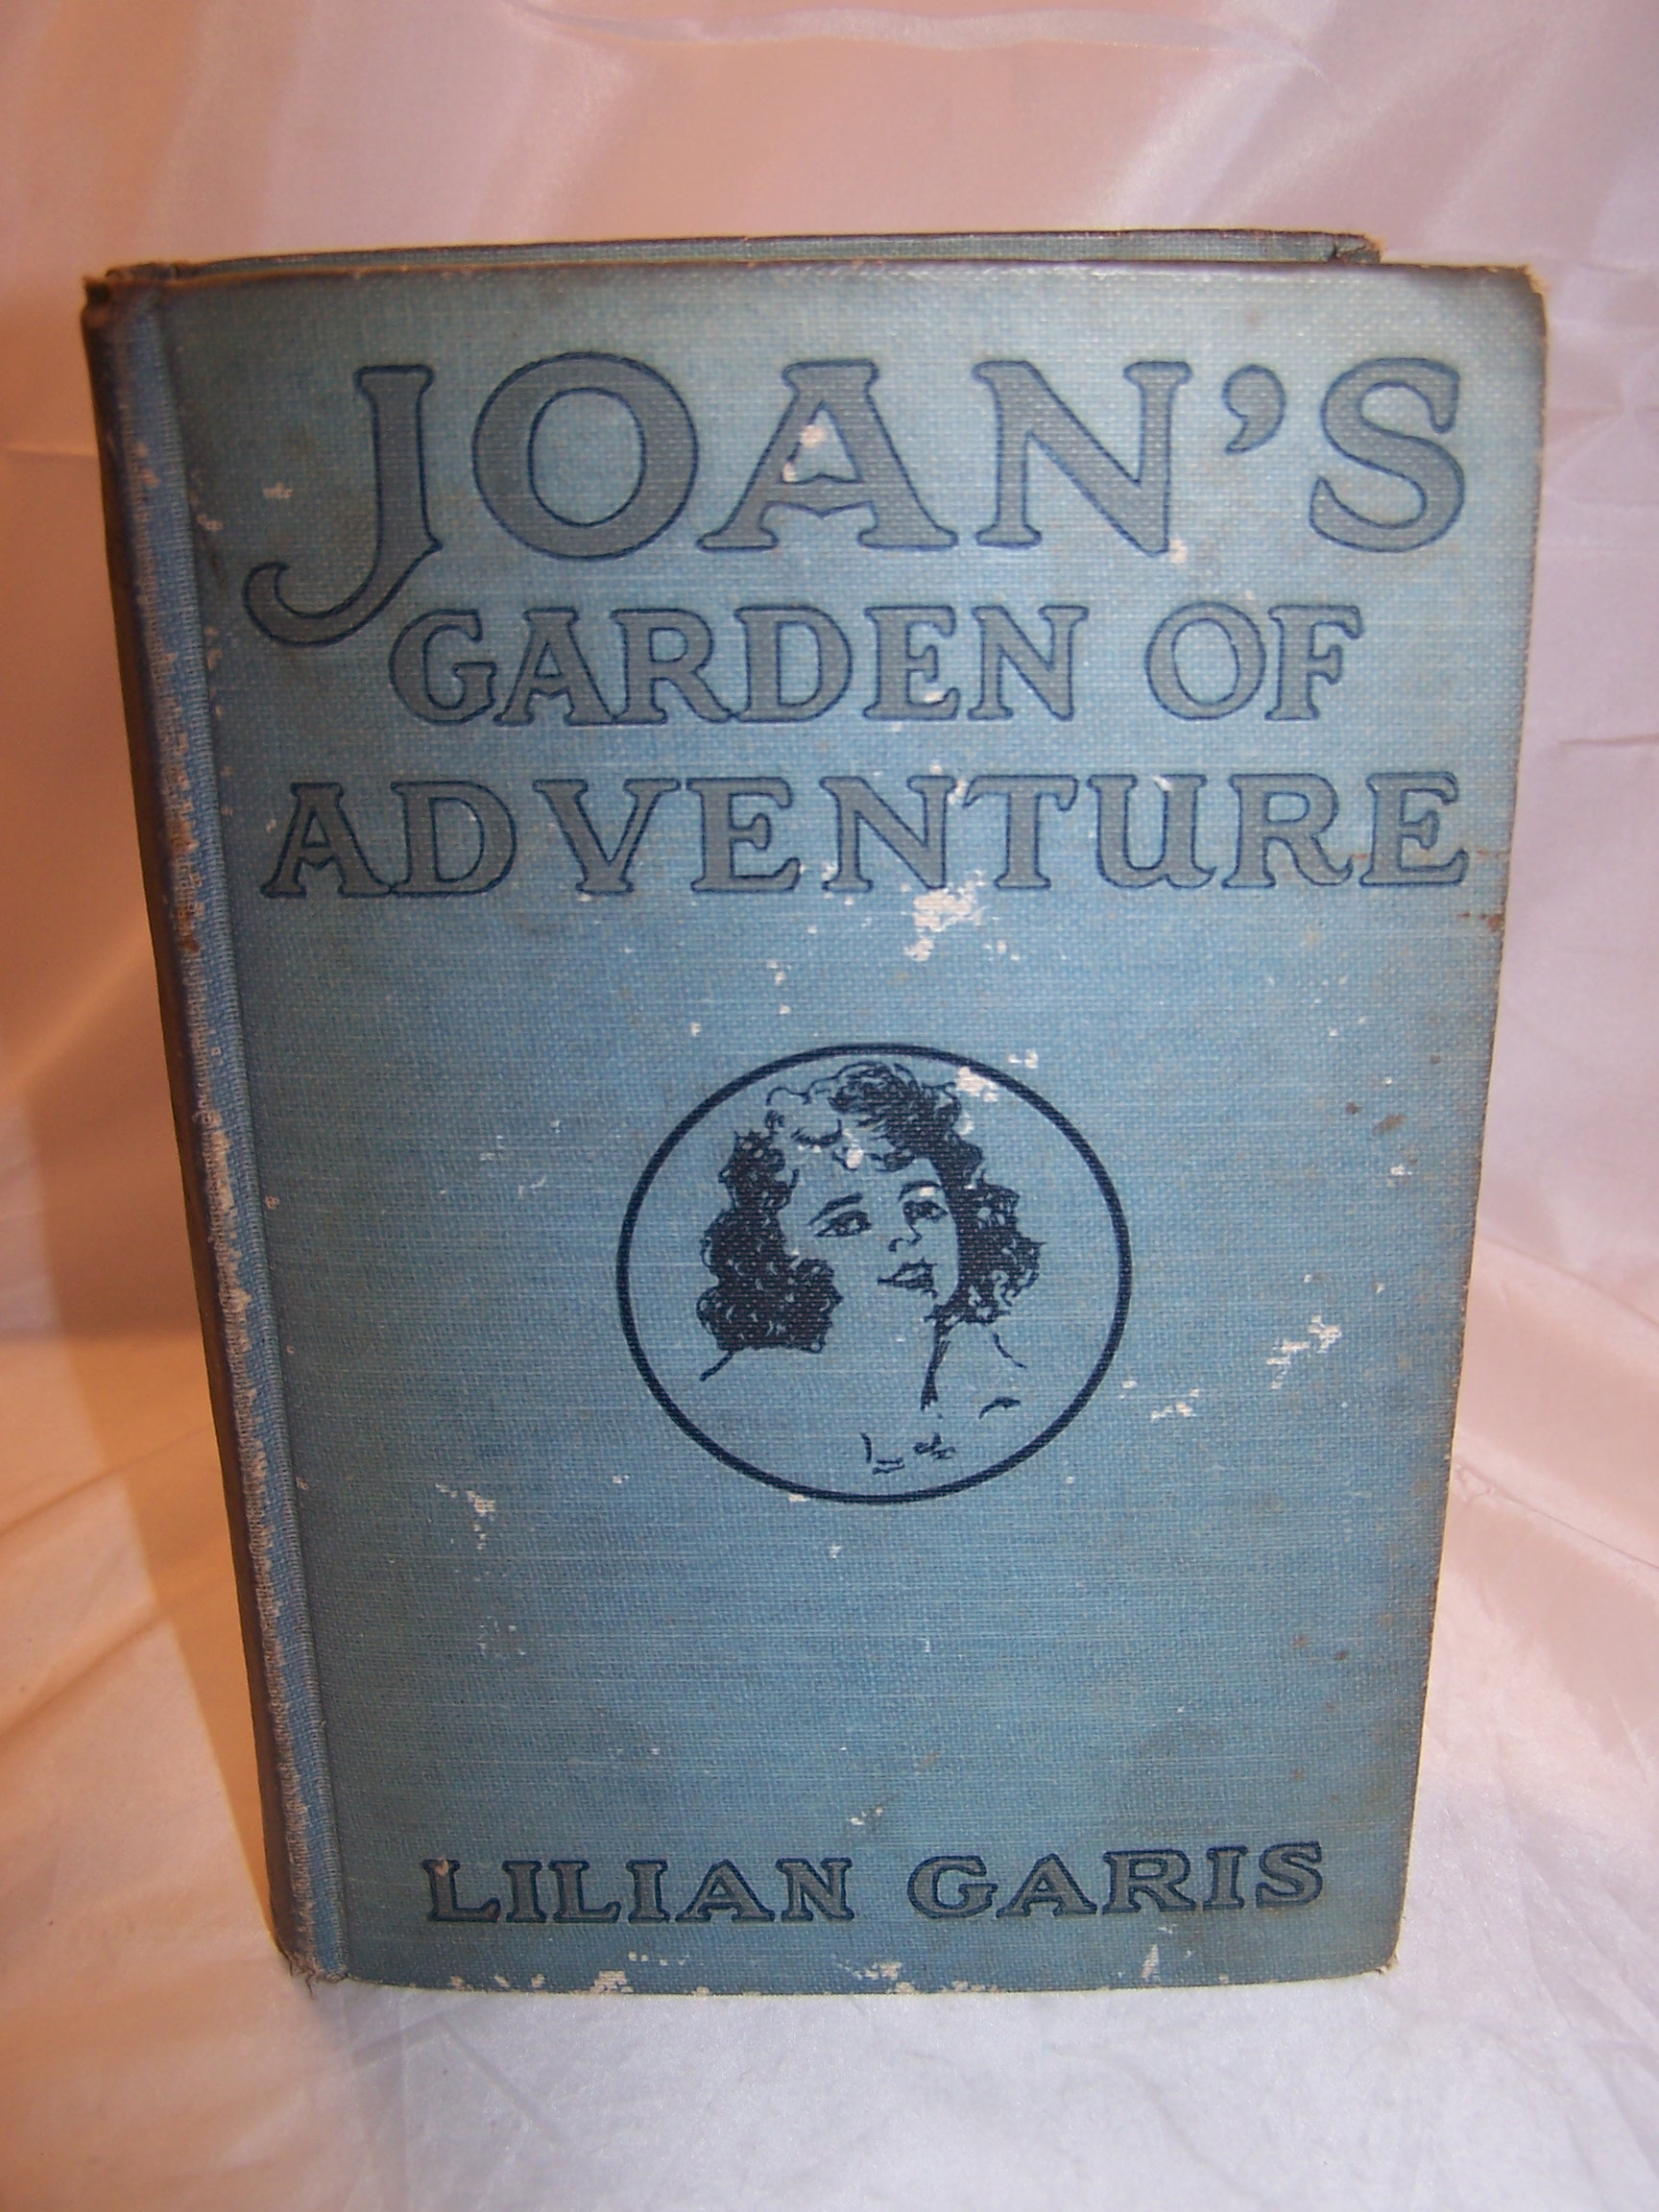 Joan's Garden of Adventure